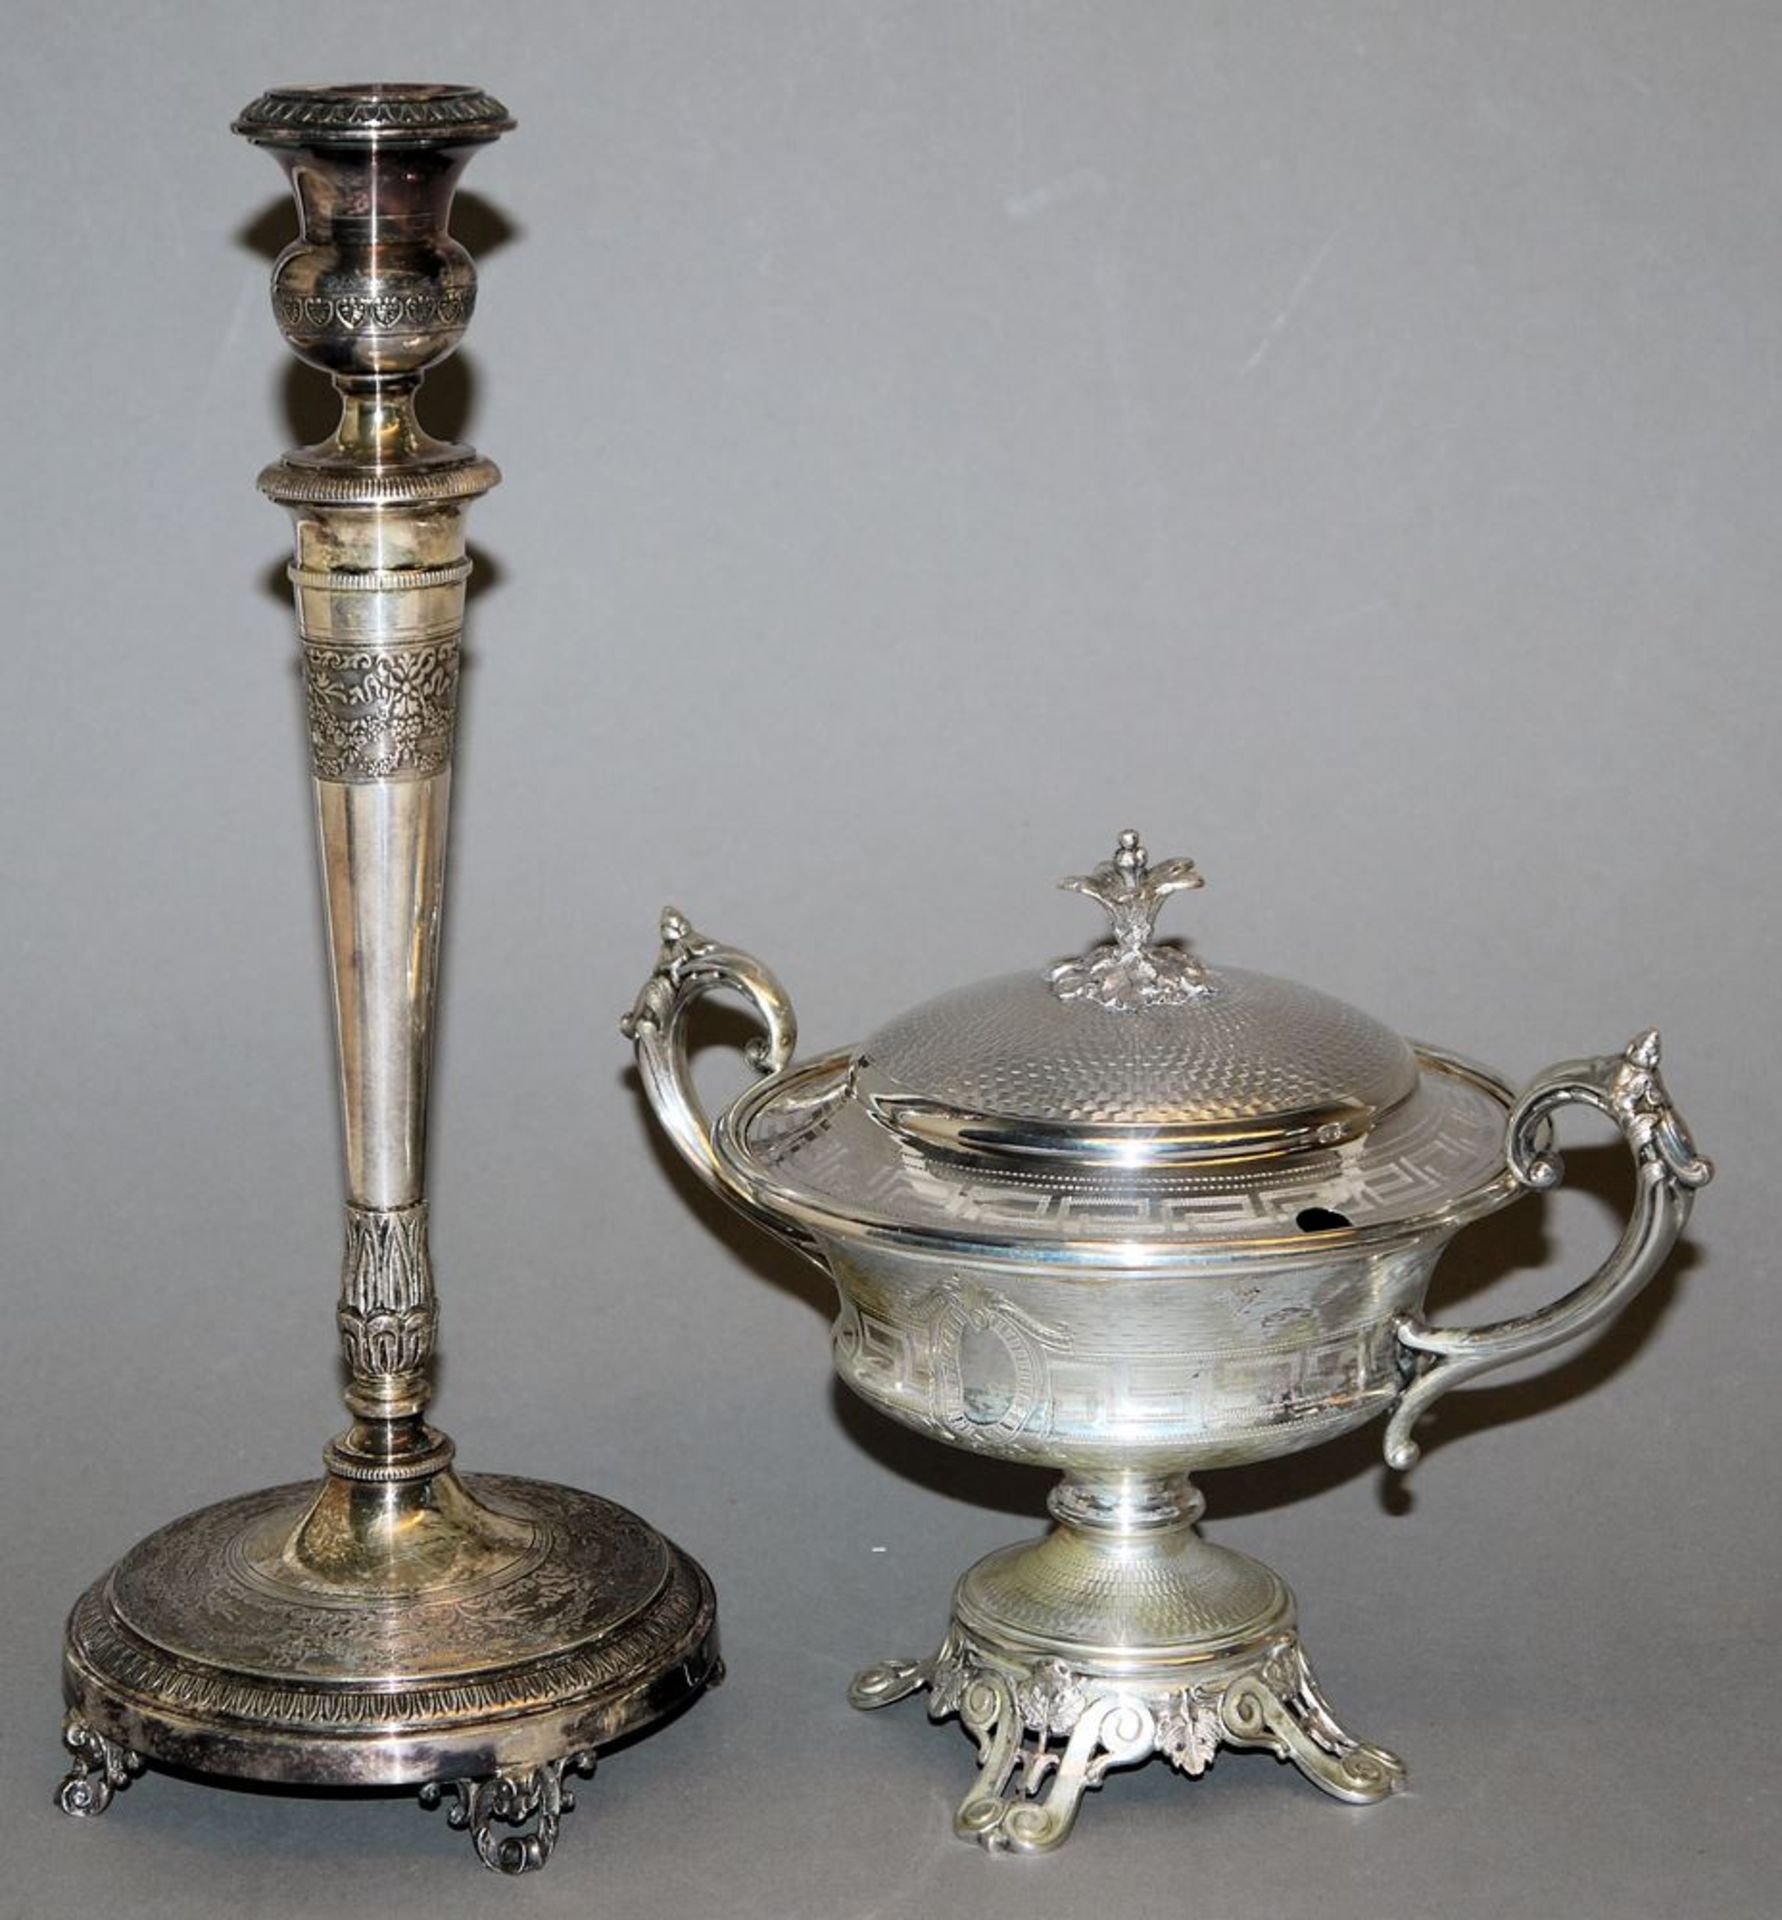 Zuckerschale, Silber, 19. Jh. & Leuchter, Silber, um 1900/20